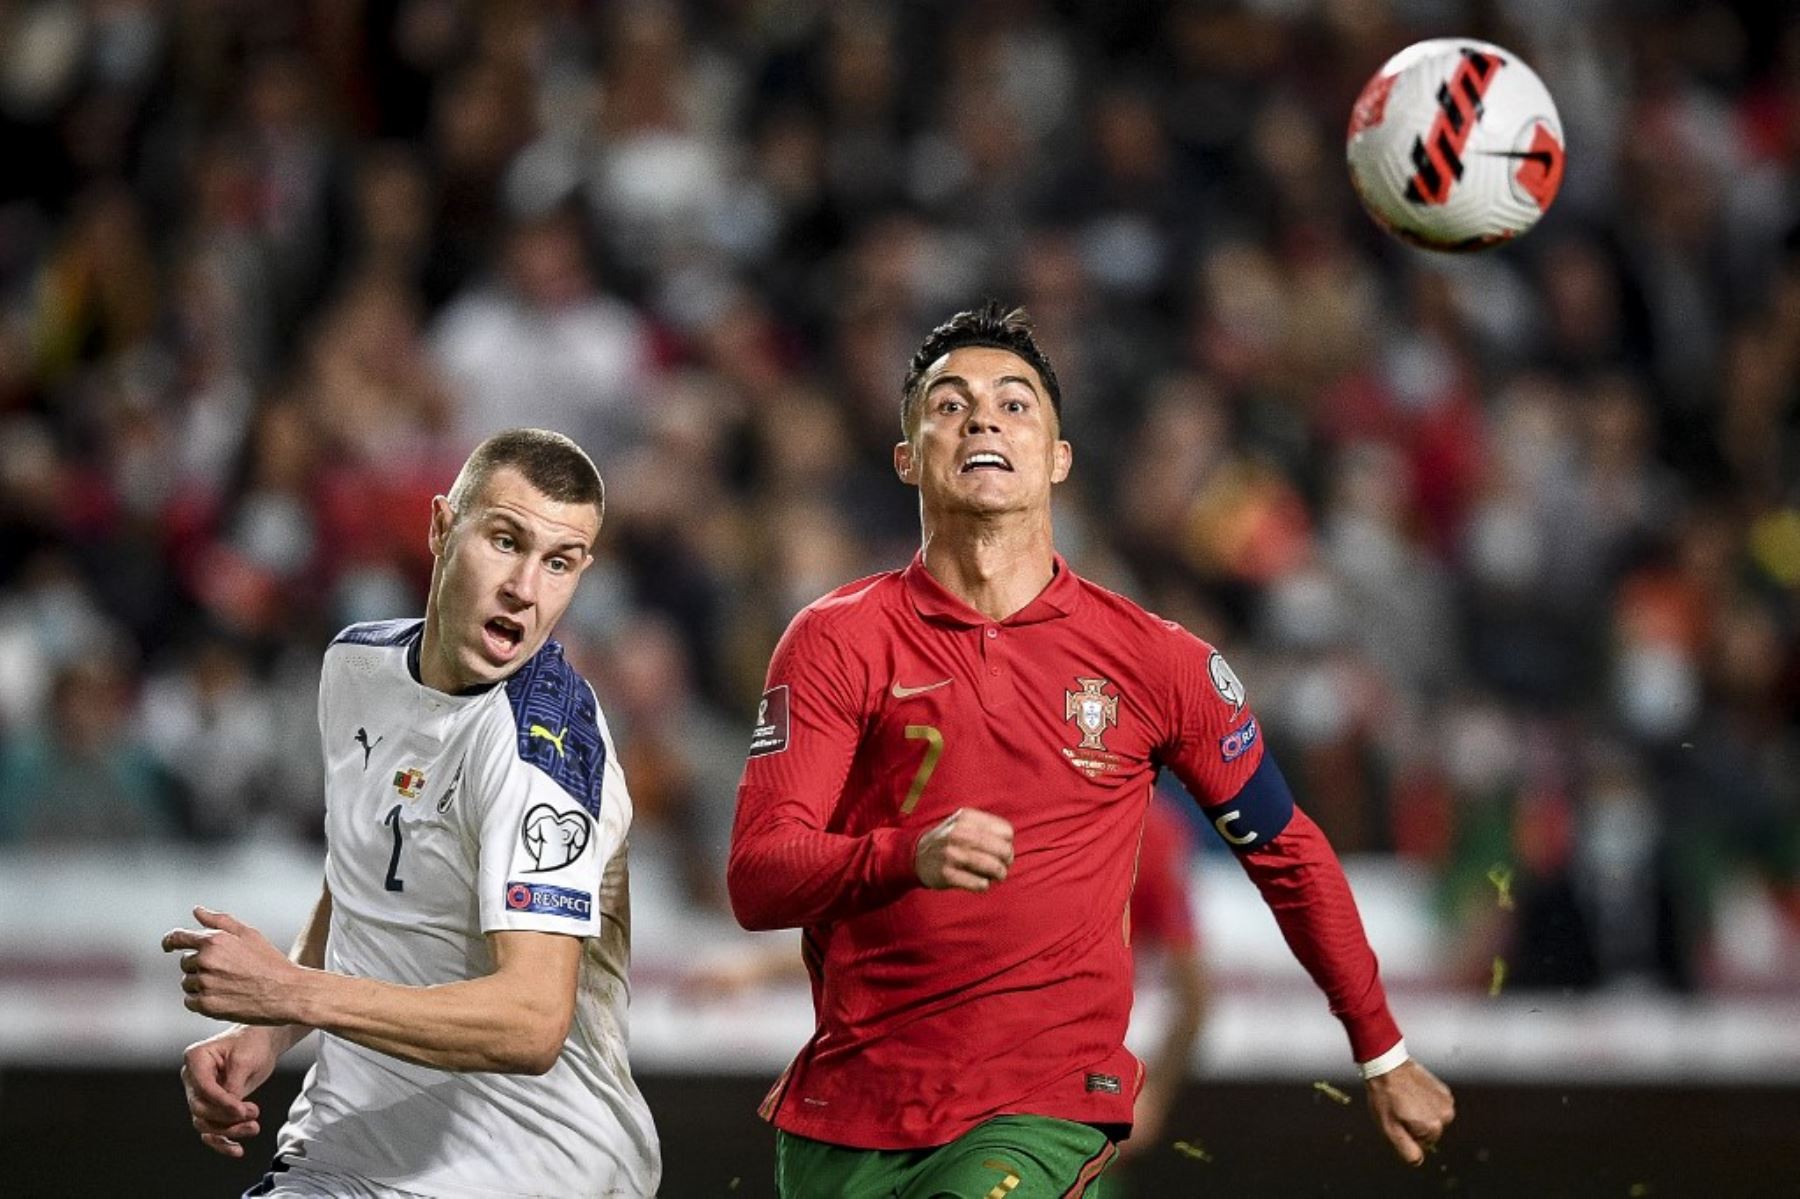 Serbia derrotó 2-1 a Portugal en los últimos minutos y clasificó de manera directa al Mundial